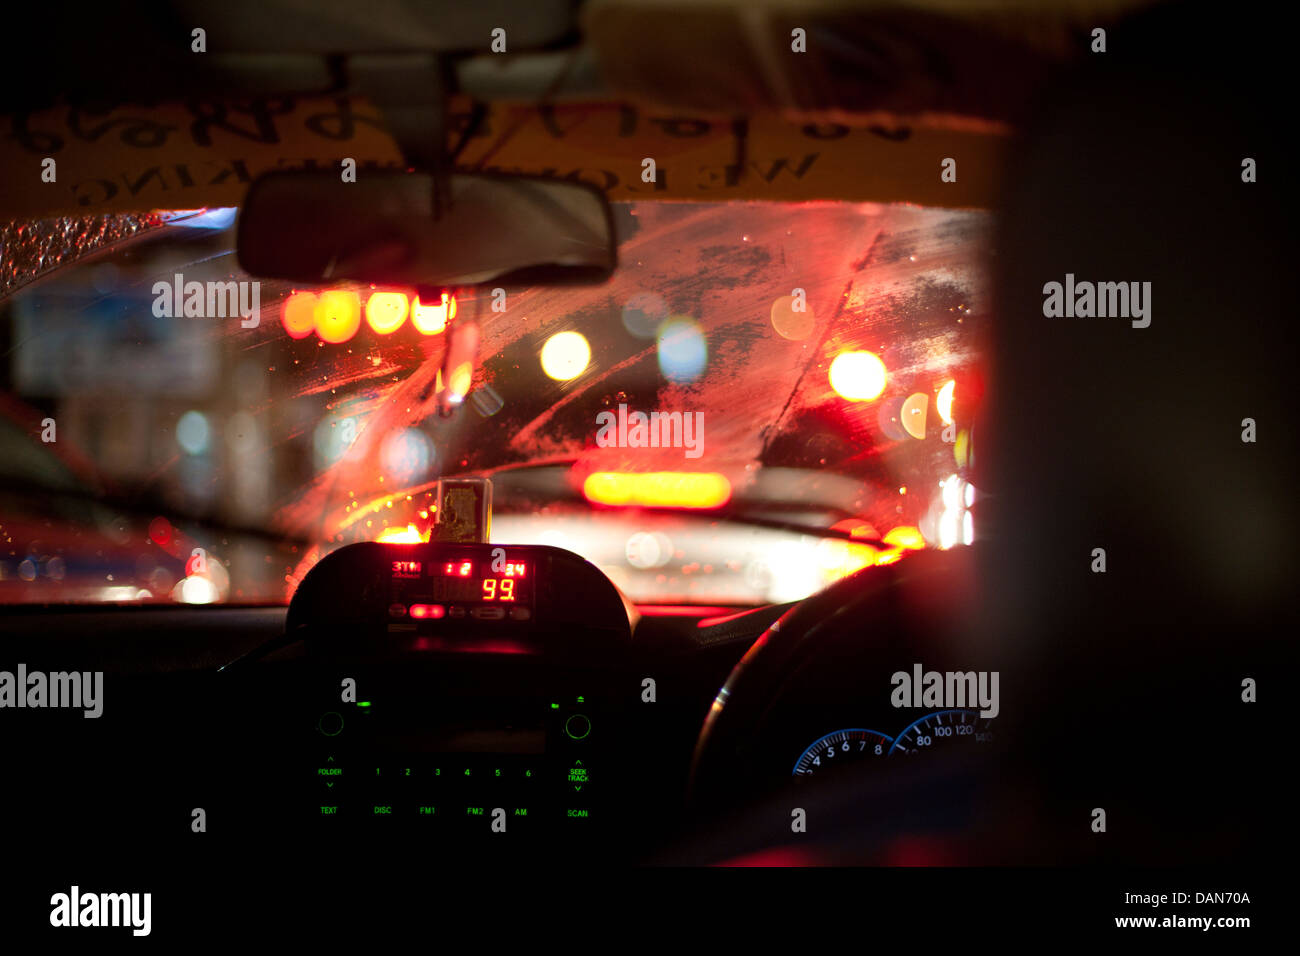 Thailand, Bangkok, Taxi ride at night Stock Photo